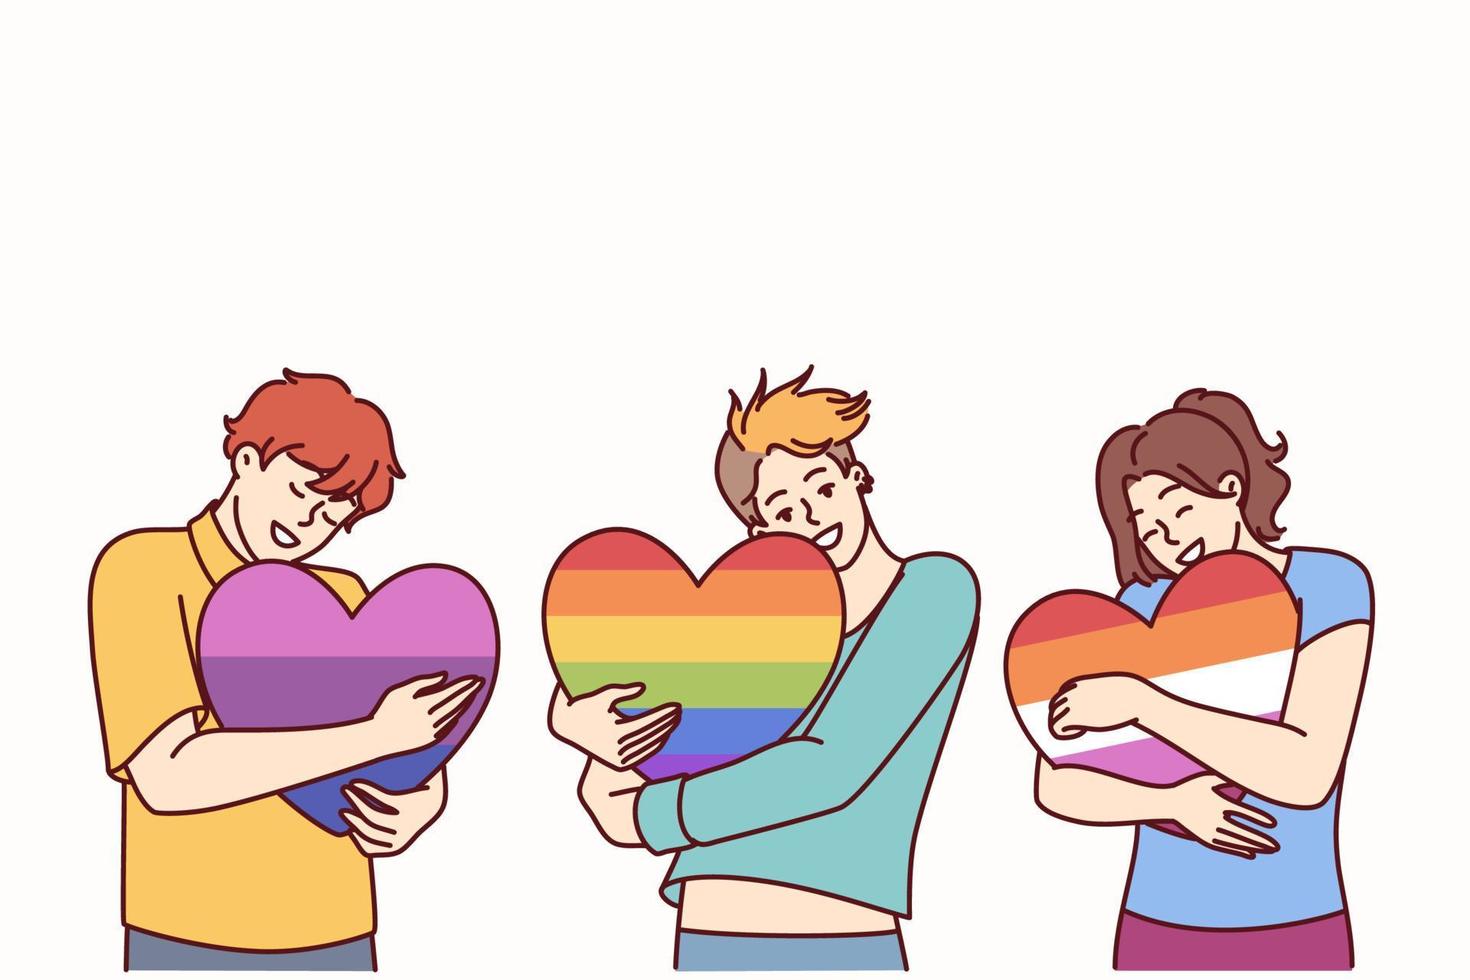 mensen knuffelen harten geschilderd in kleuren van lgbt en lgbtq vlaggen maken vrijheid van keuze in seks en levensstijl. concept van openbaar tolerantie voor mensen van lgbt trots gemeenschap of transgender mensen vector